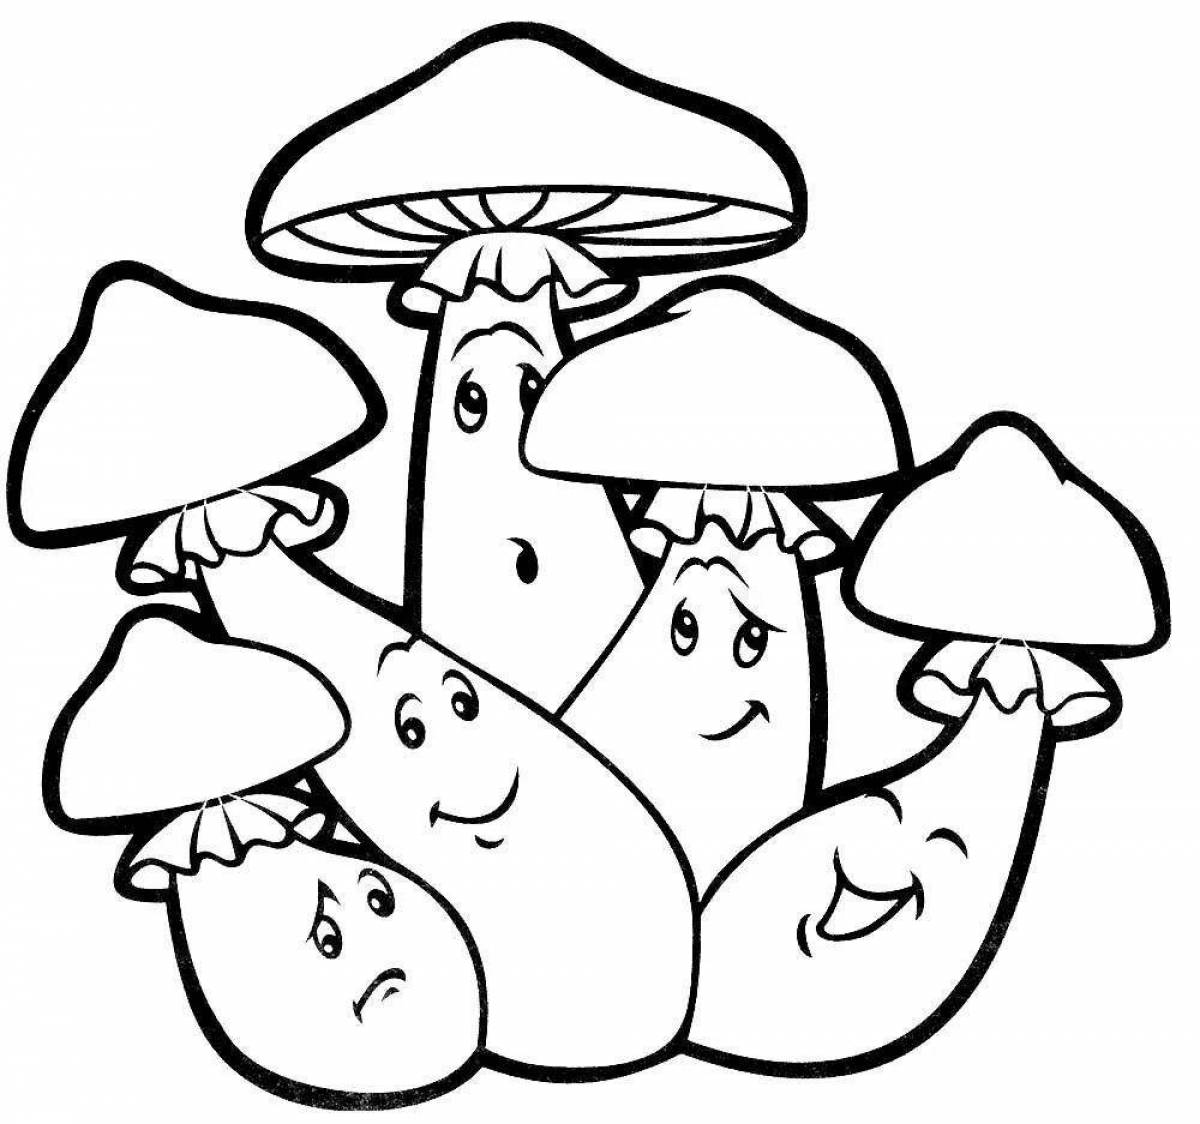 Animated mushroom coloring